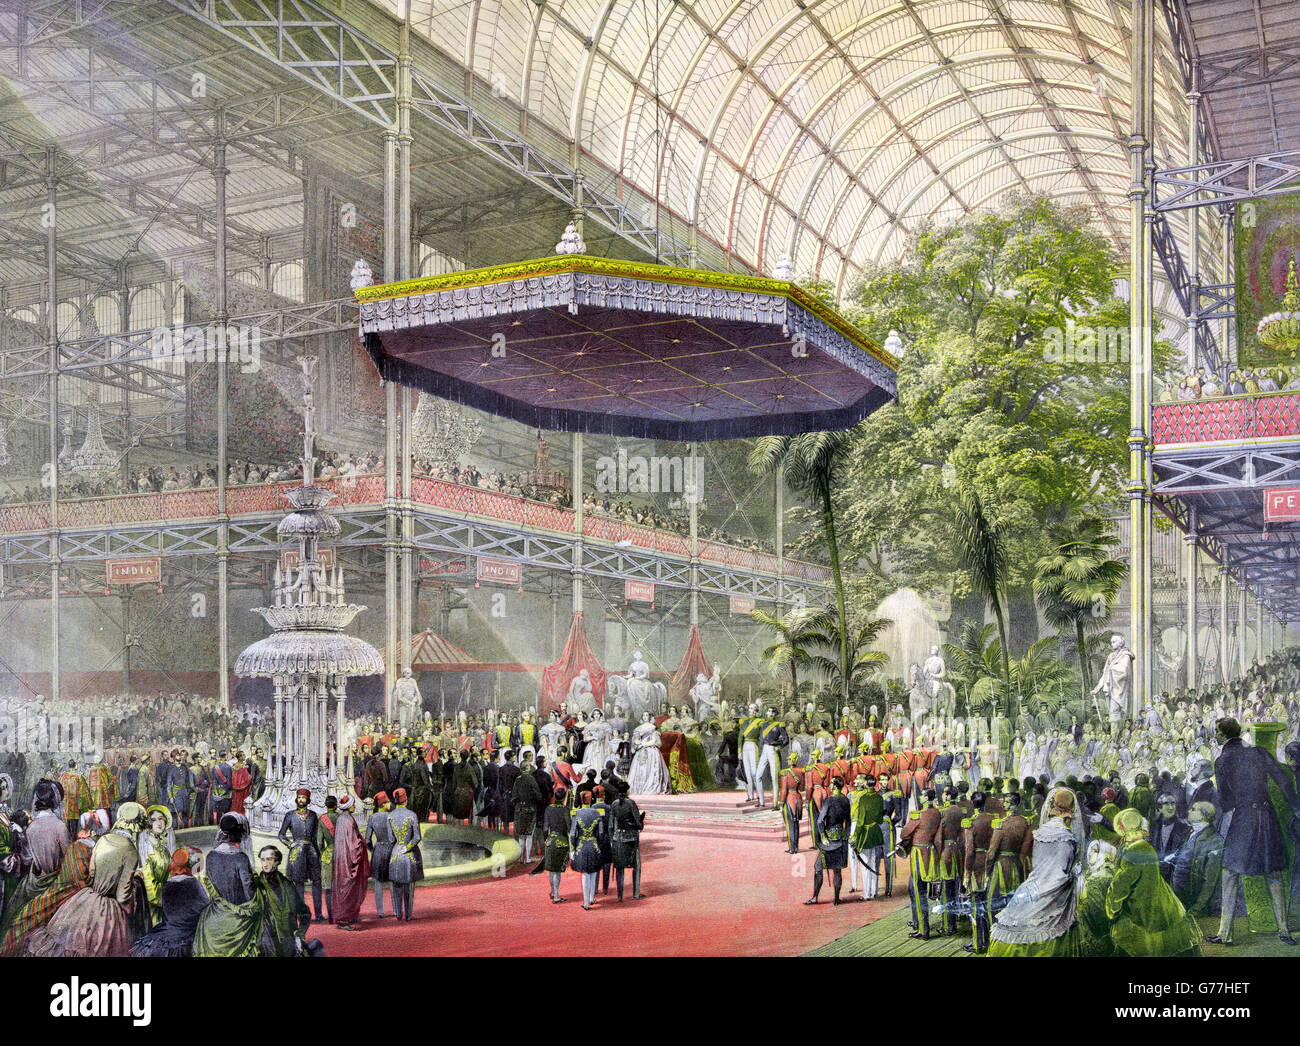 Weltausstellung 1851. Die Zustand-Öffnung von The Great Exhibition von 1851 von Königin Victoria und Prinz Albert, Crystal Palace, London, UK. Stockfoto